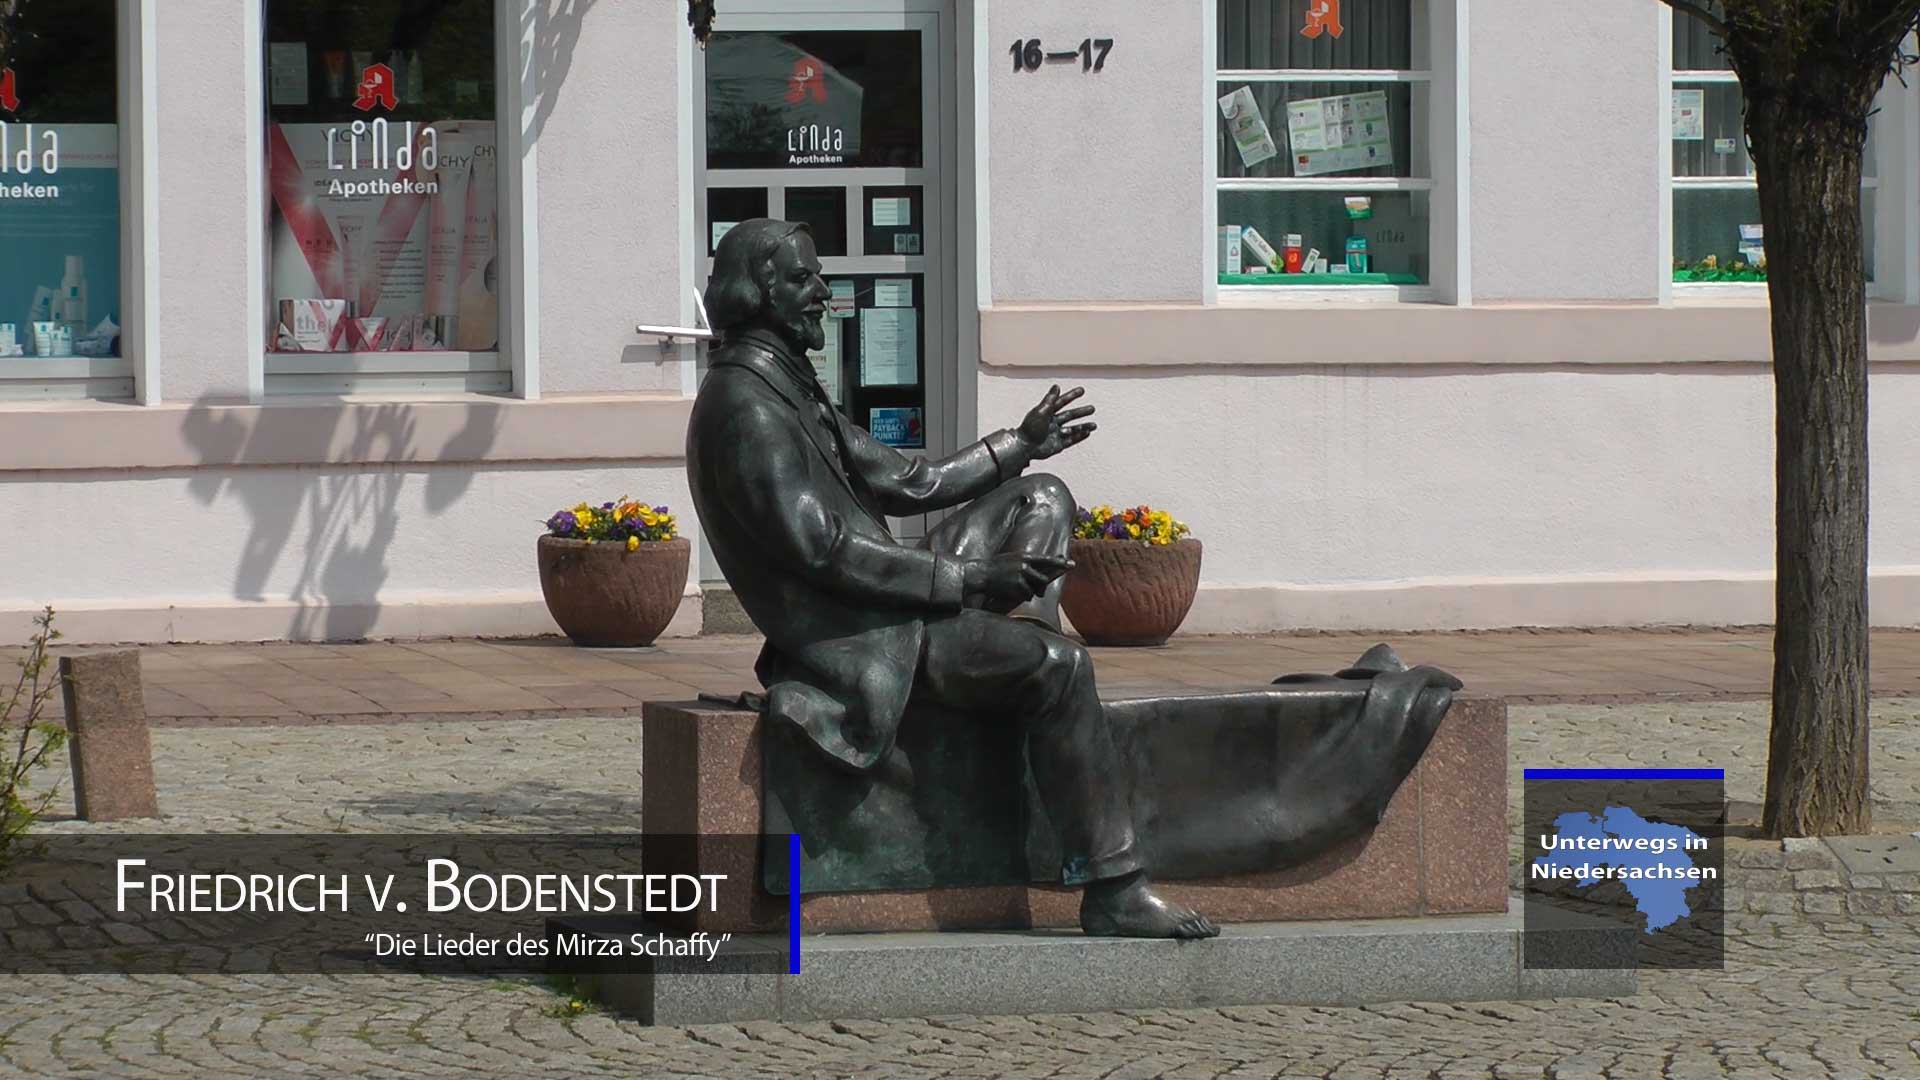 Friedrich von Bodenstedt